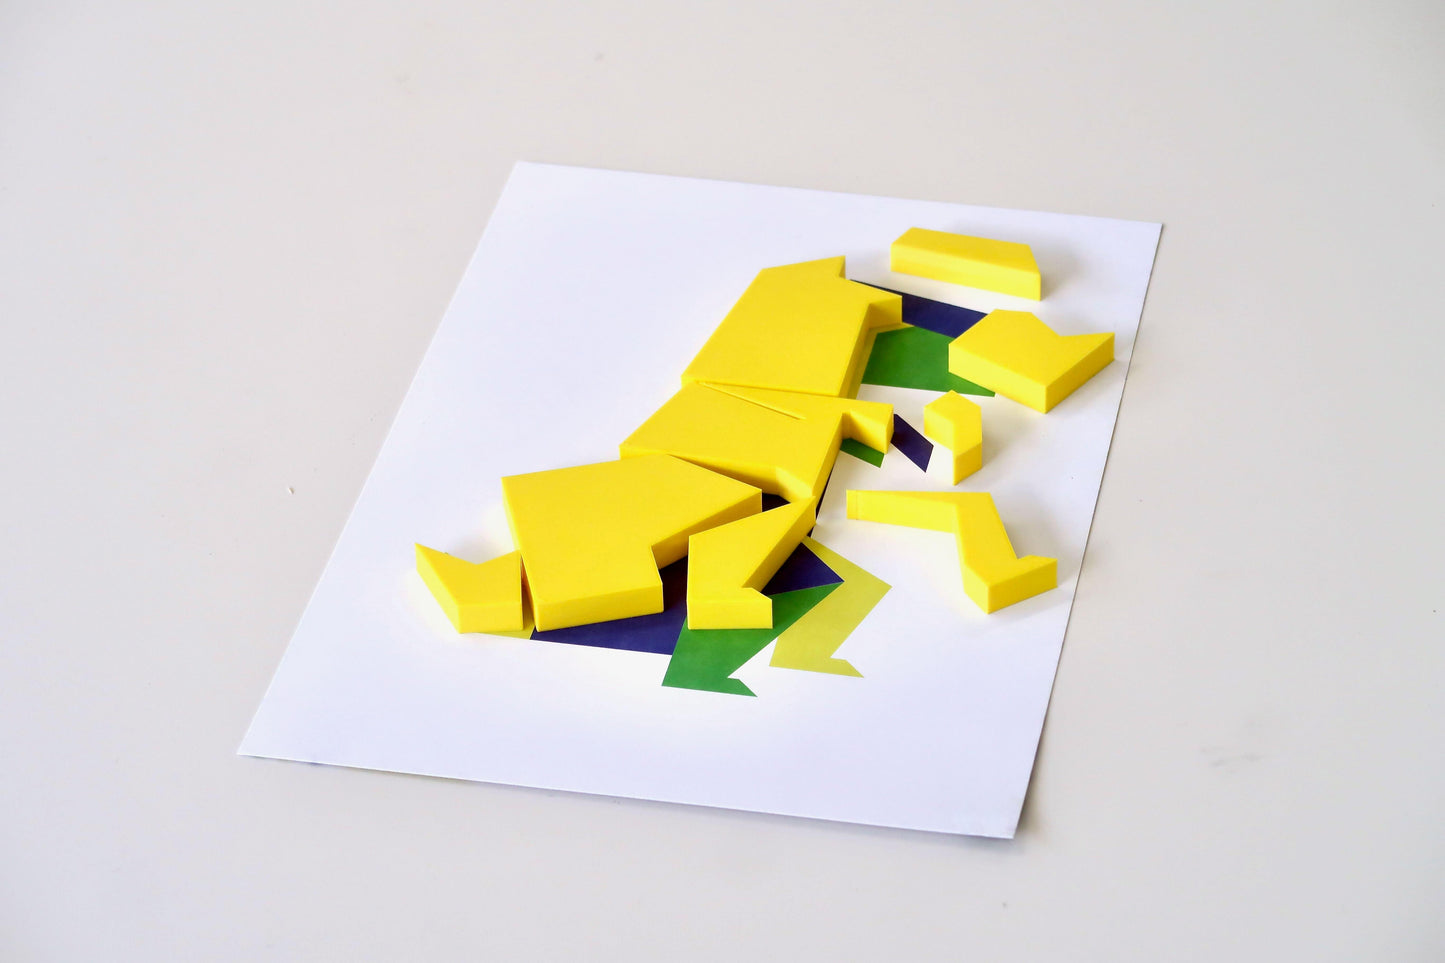 Jeu Montessori de sérigraphie pour enfants - Kit tampons dinosaure - T-REX - Quark